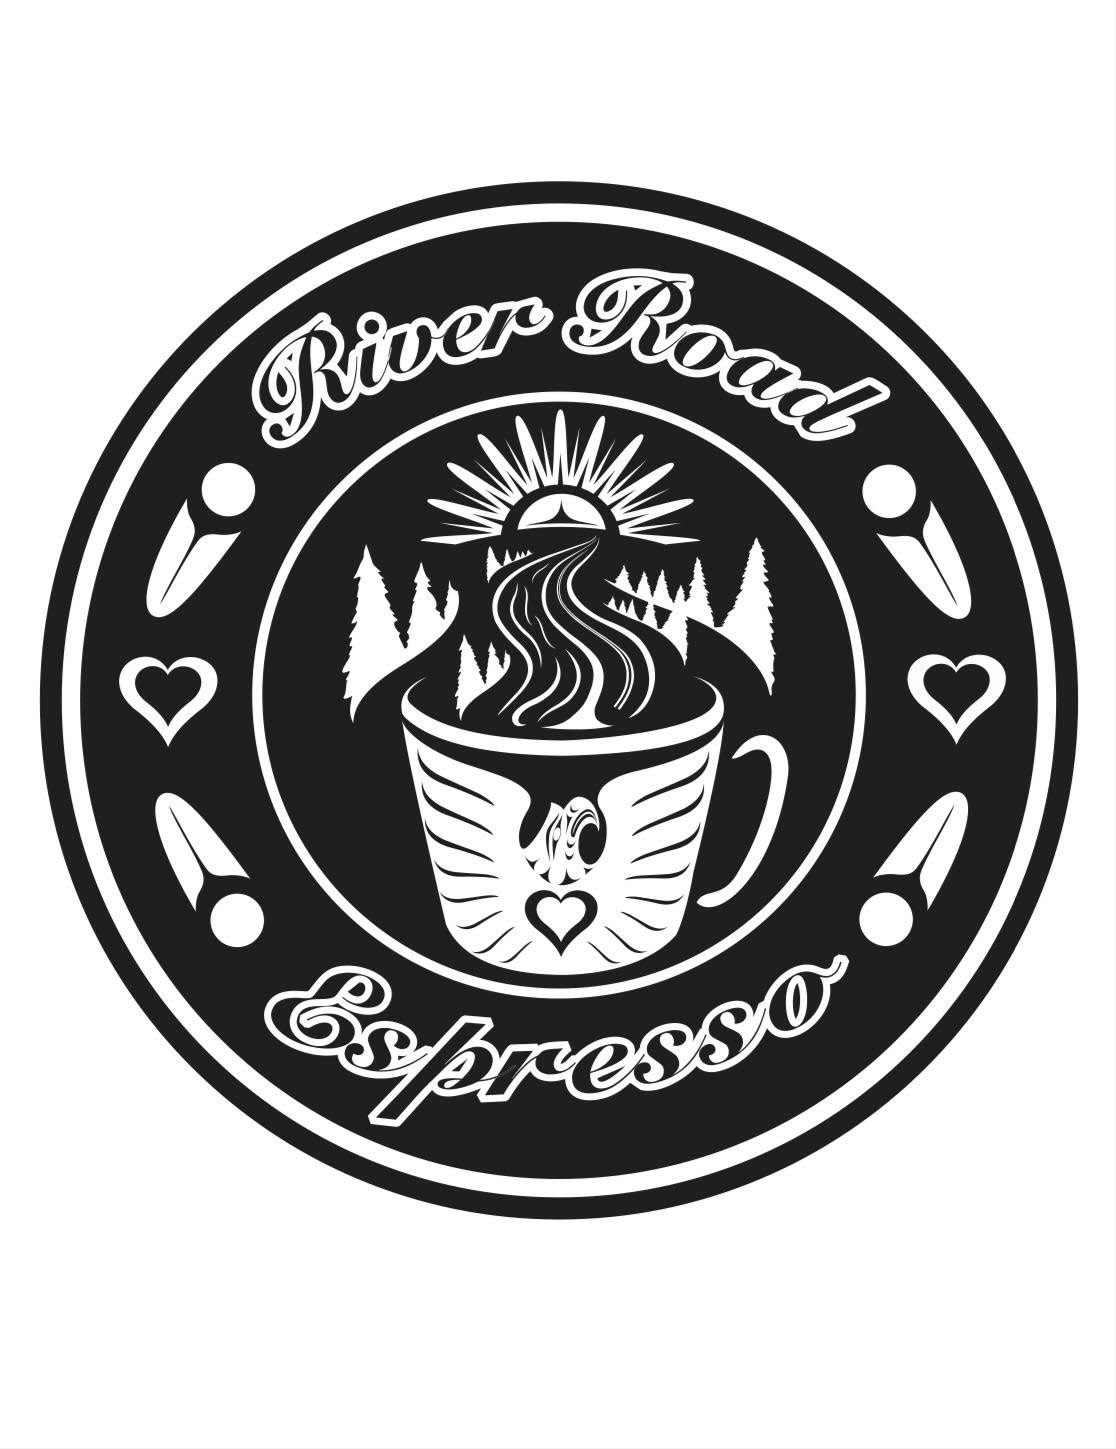 River Road Espresso